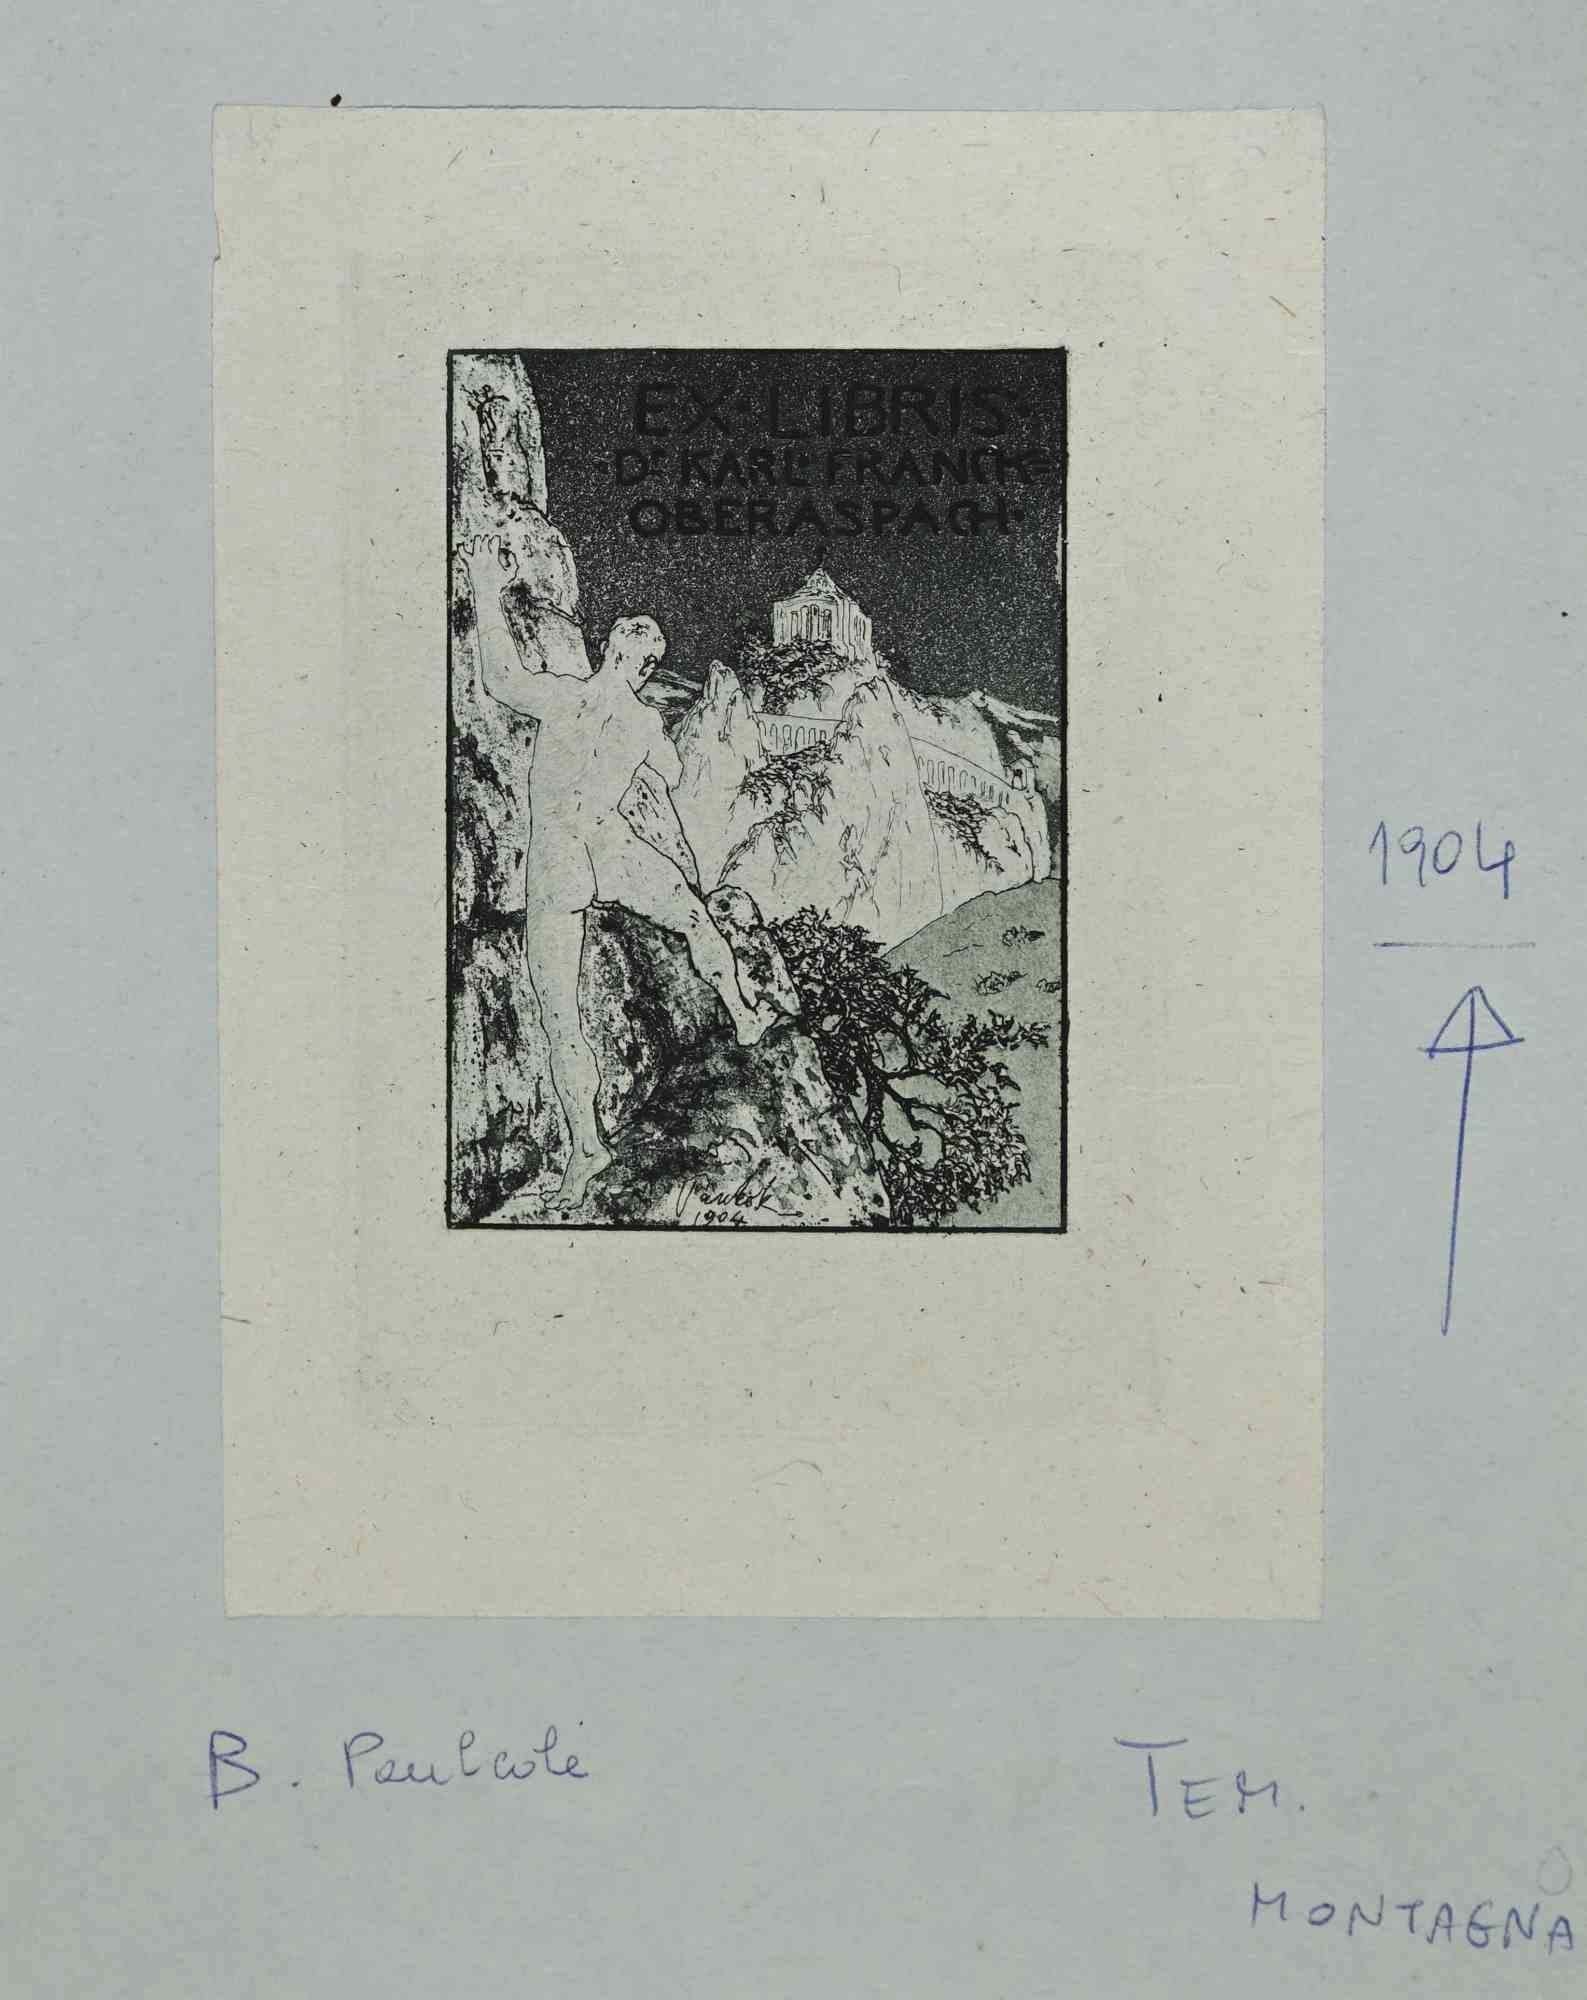 Ex Libris - Dr. Karl Franck ist ein Kunstwerk des Künstlers B. Paulcole aus dem Jahr 1904.

Ätzdruck auf Seidenpapier. Handsigniert und datiert auf der Rückseite. 

Das Werk ist auf farbigen Karton geklebt.

Abmessungen insgesamt: 20 x 16 cm.

Gute